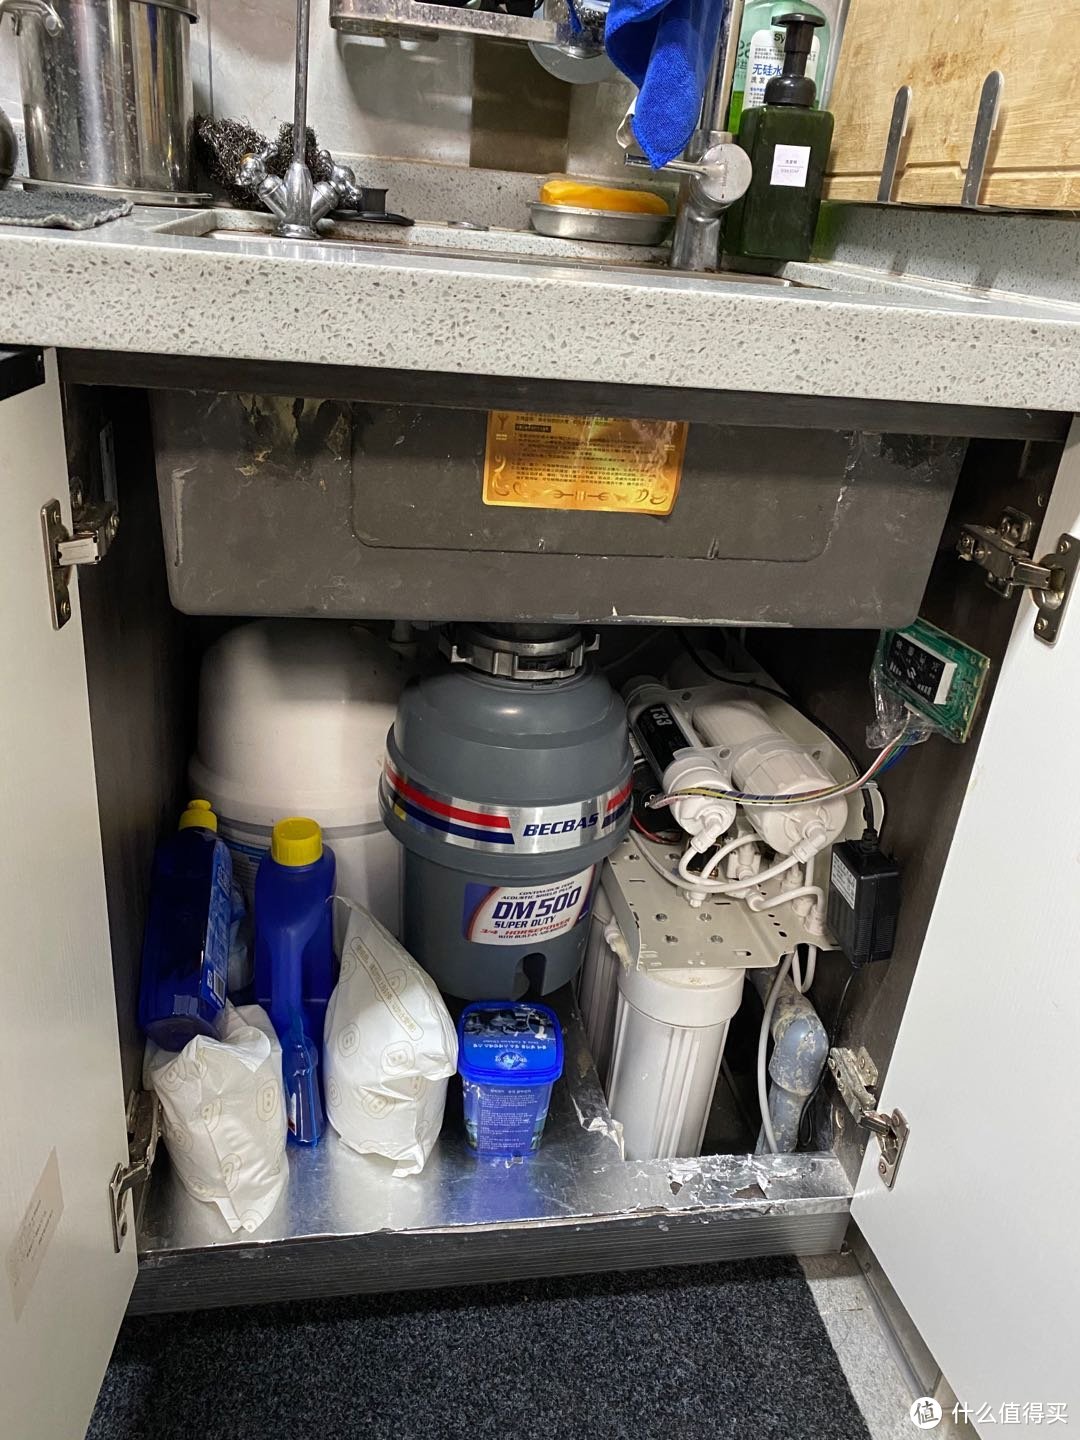 带桶DIY净水机，垃圾处理器刚好放下导致净水机外壳拆掉。洗碗粉洗碗机用品都放里面 